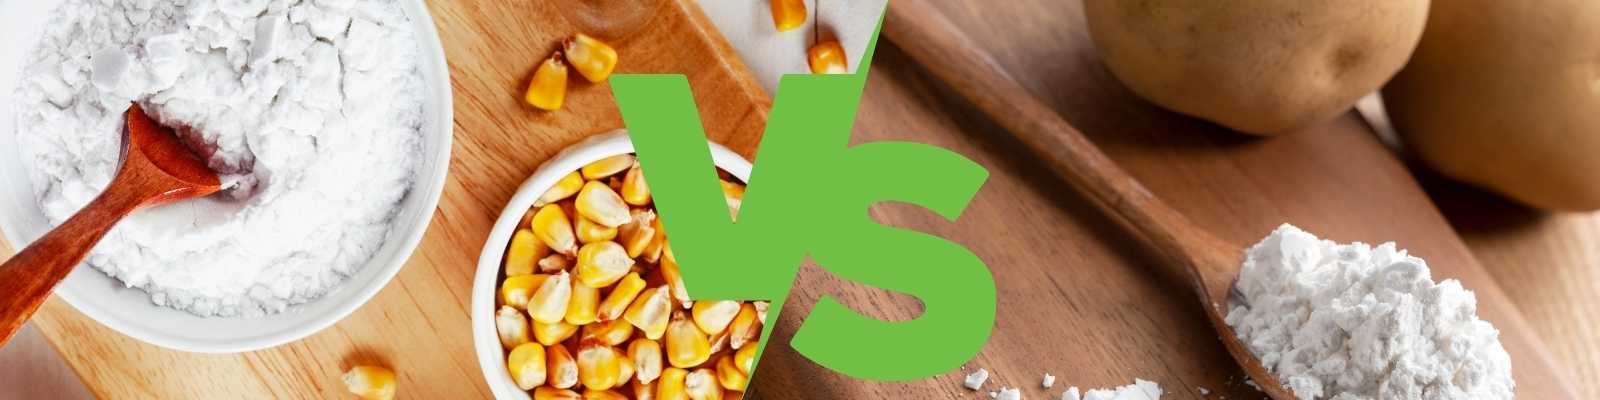 Corn Starch vs. Potato Starch: Which One's Better?